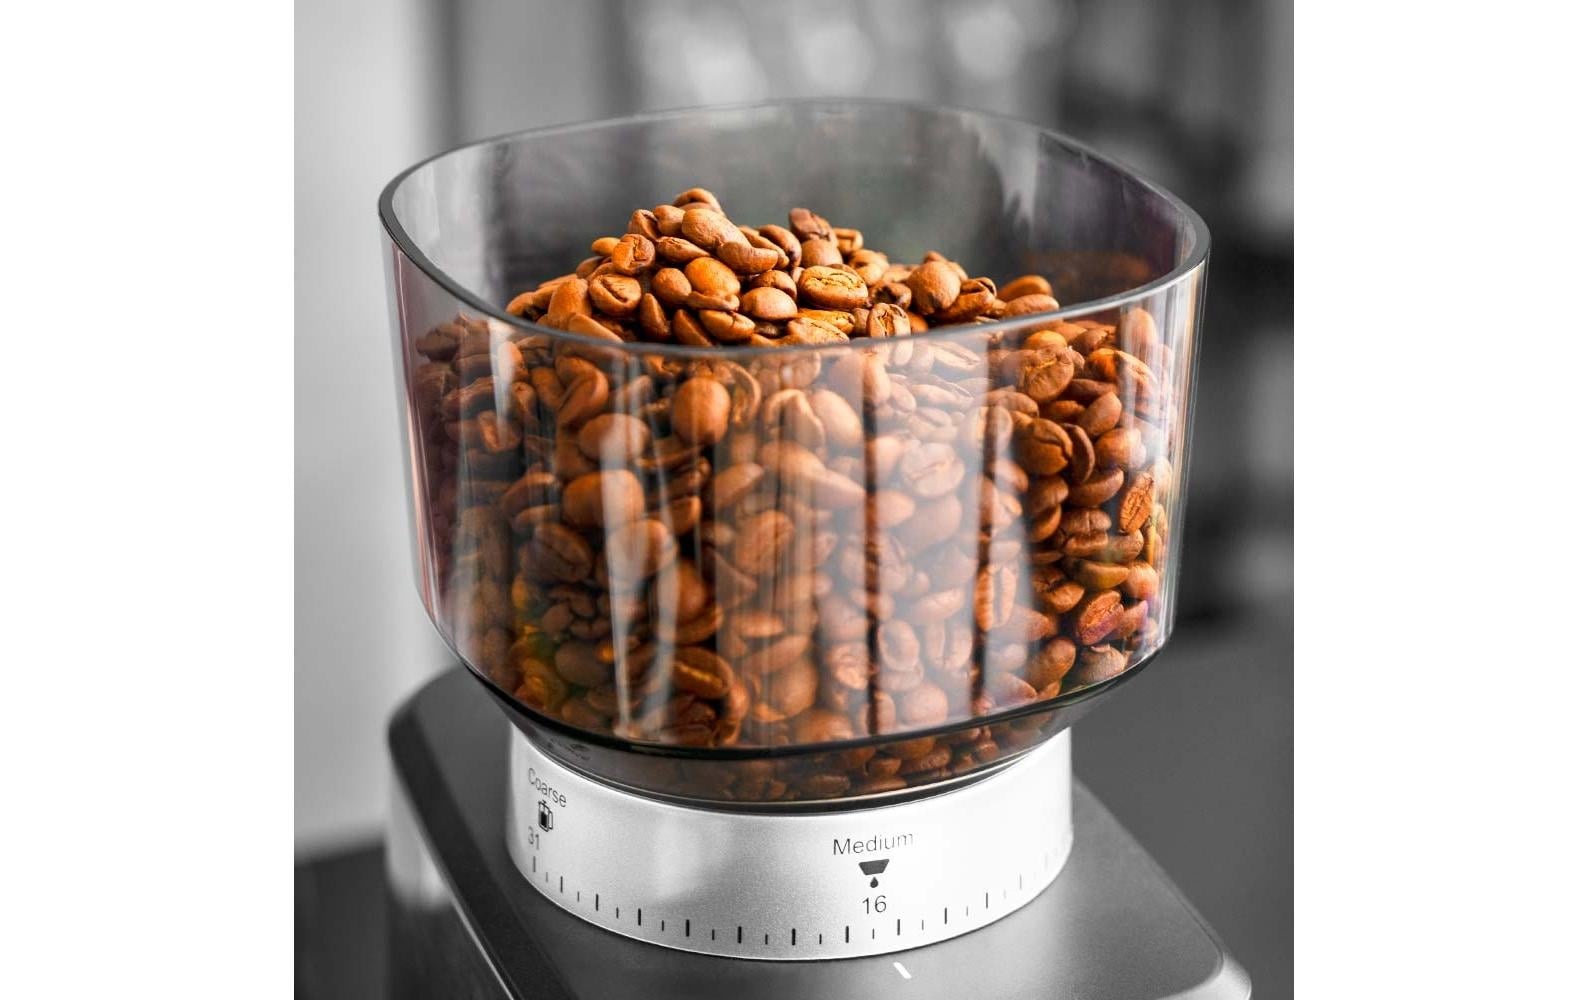 Gastroback Kaffeemühle »Design Digital 42643 Schwarz/Silber«, 180 W, 320 g Bohnenbehälter